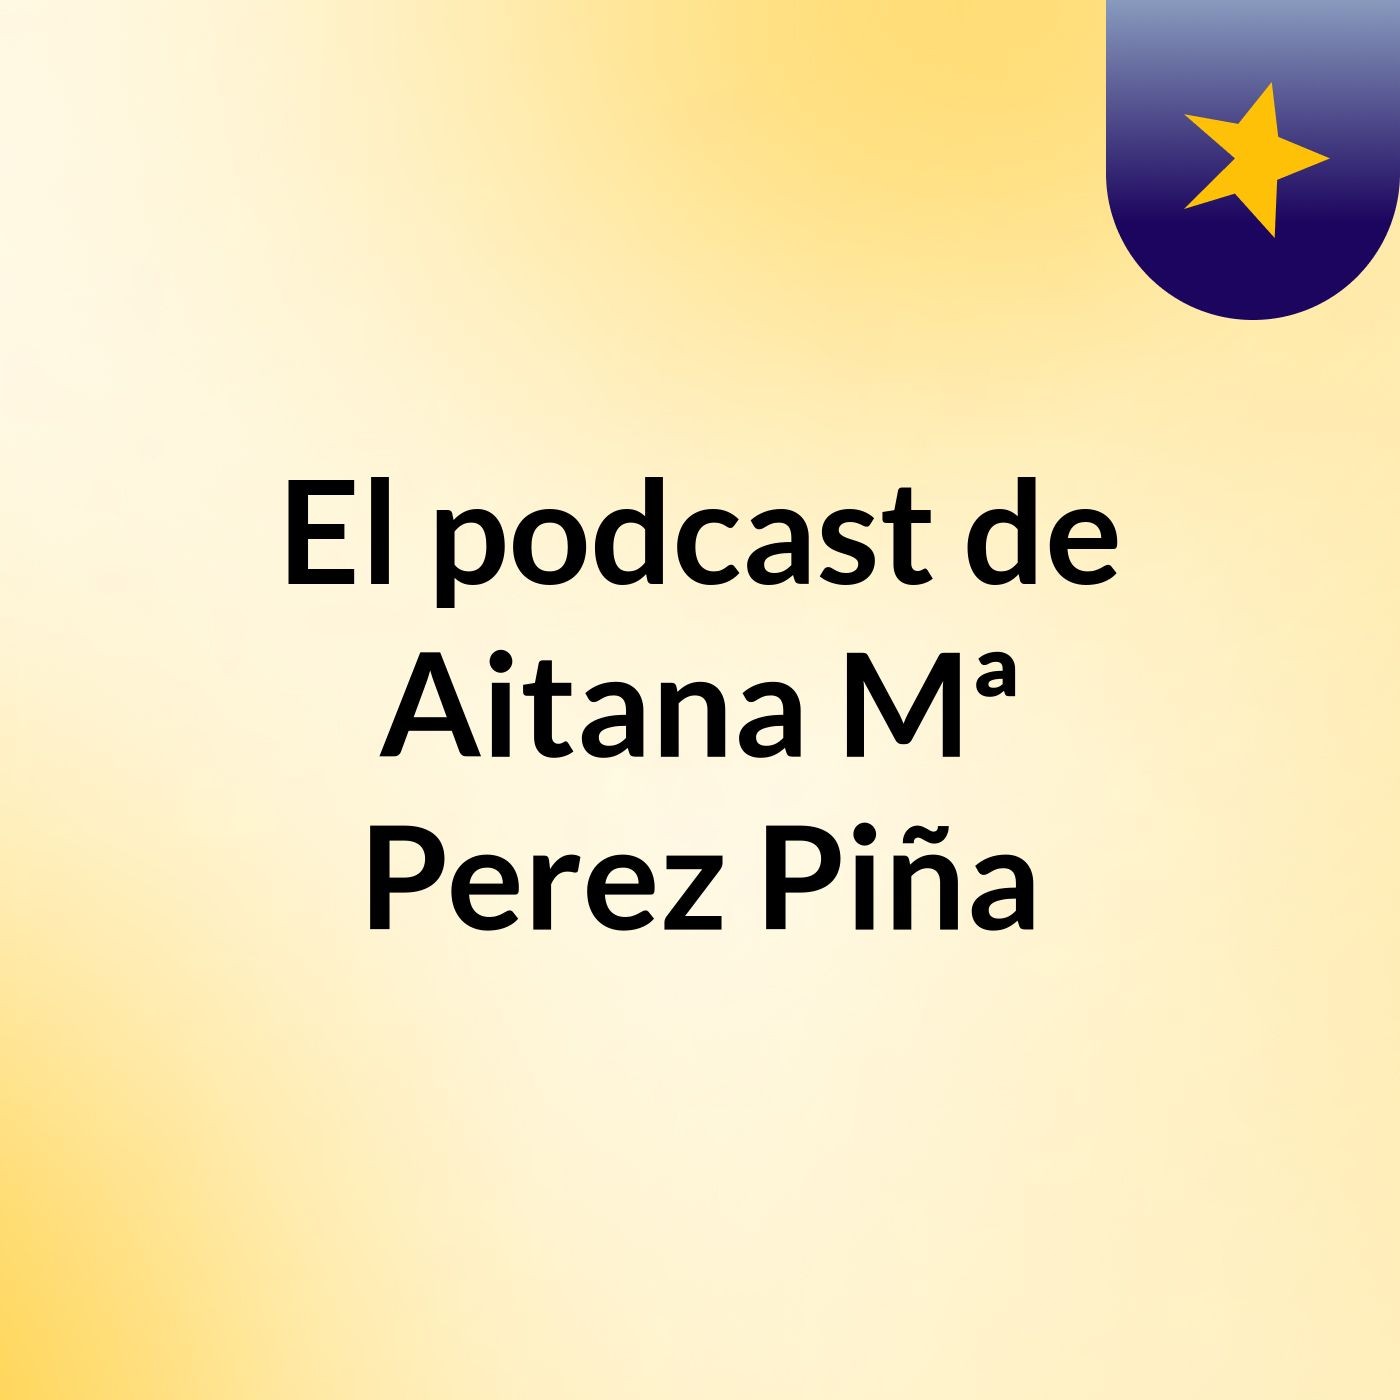 El podcast de Aitana Mª Perez Piña